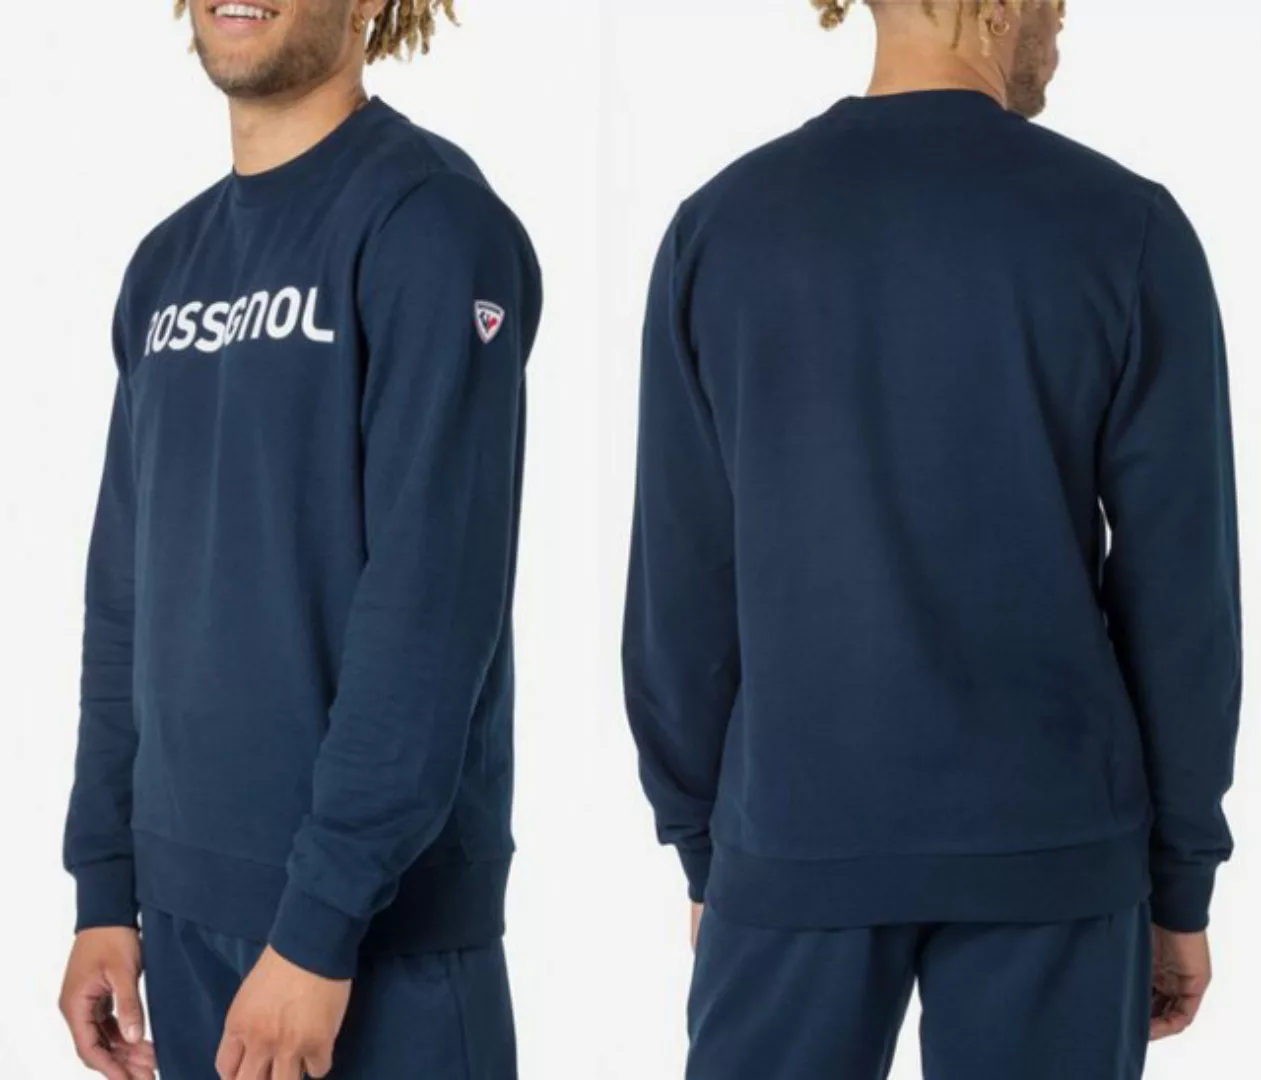 Rossignol Sweatshirt ROSSIGNOL Comfy Sweatshirt Pullover Pulli Jumper Sport günstig online kaufen